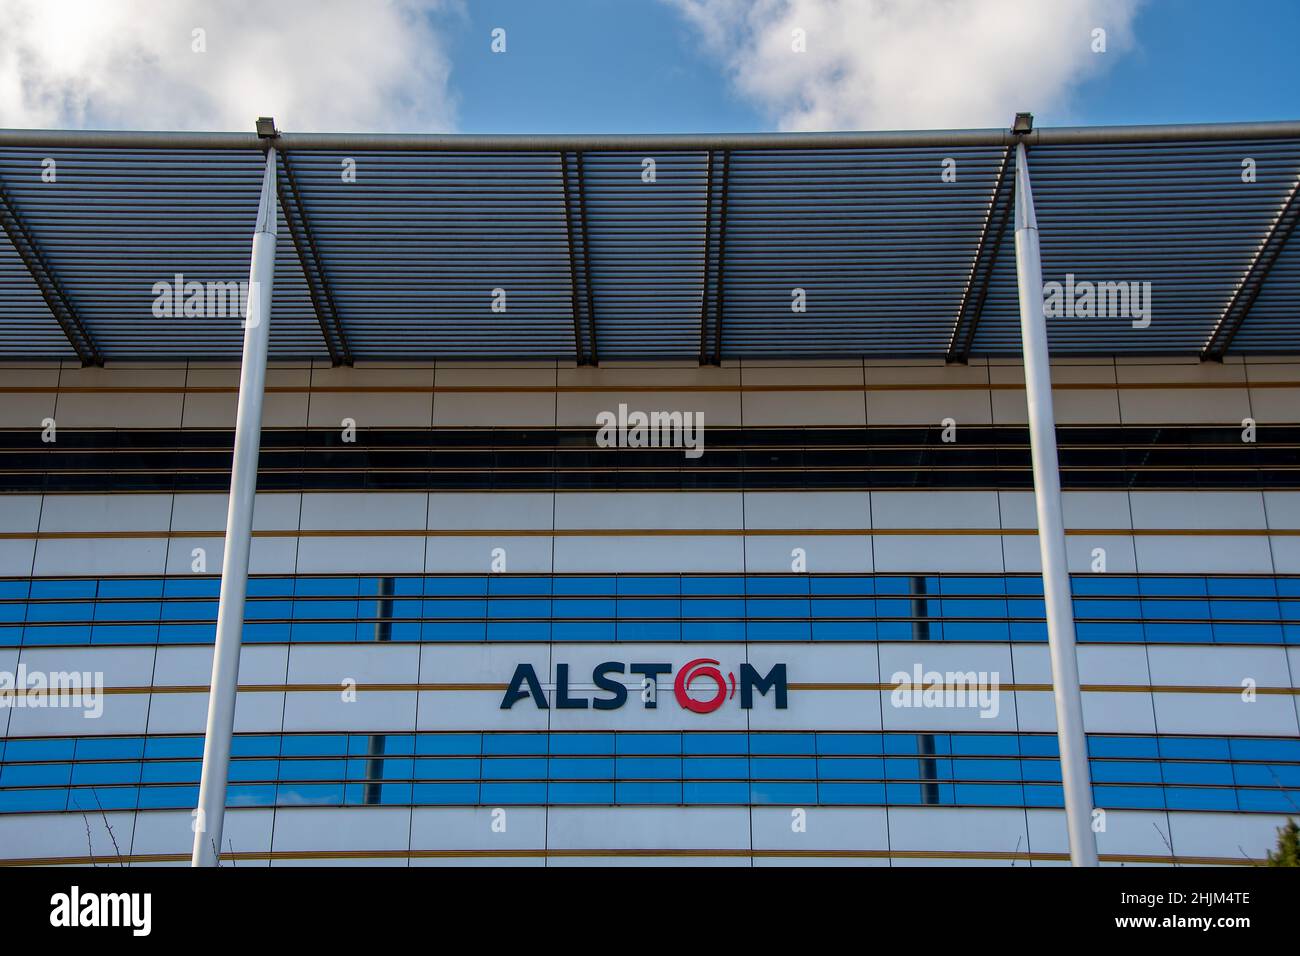 Außenansicht des Hauptsitzes von Alstom, einem französischen multinationalen Unternehmen, das sich hauptsächlich auf den Schienenverkehr (Zug, Straßenbahn und U-Bahn) spezialisiert hat Stockfoto